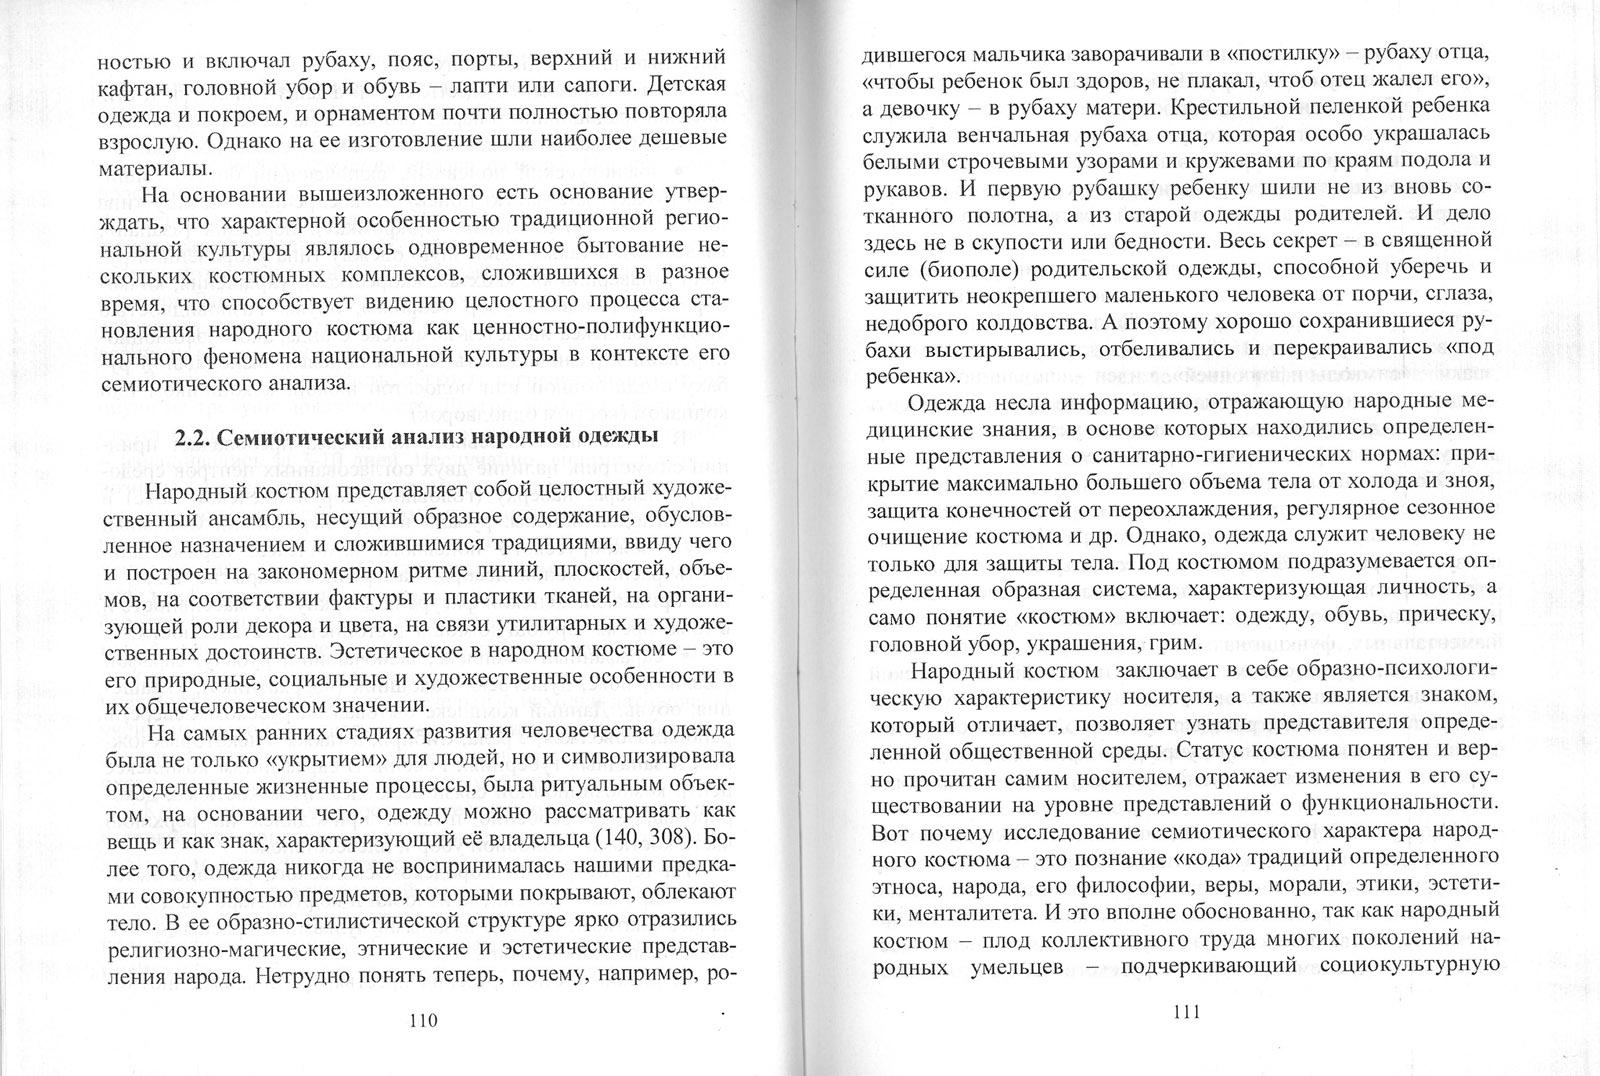 История и современность курского края скачать pdf